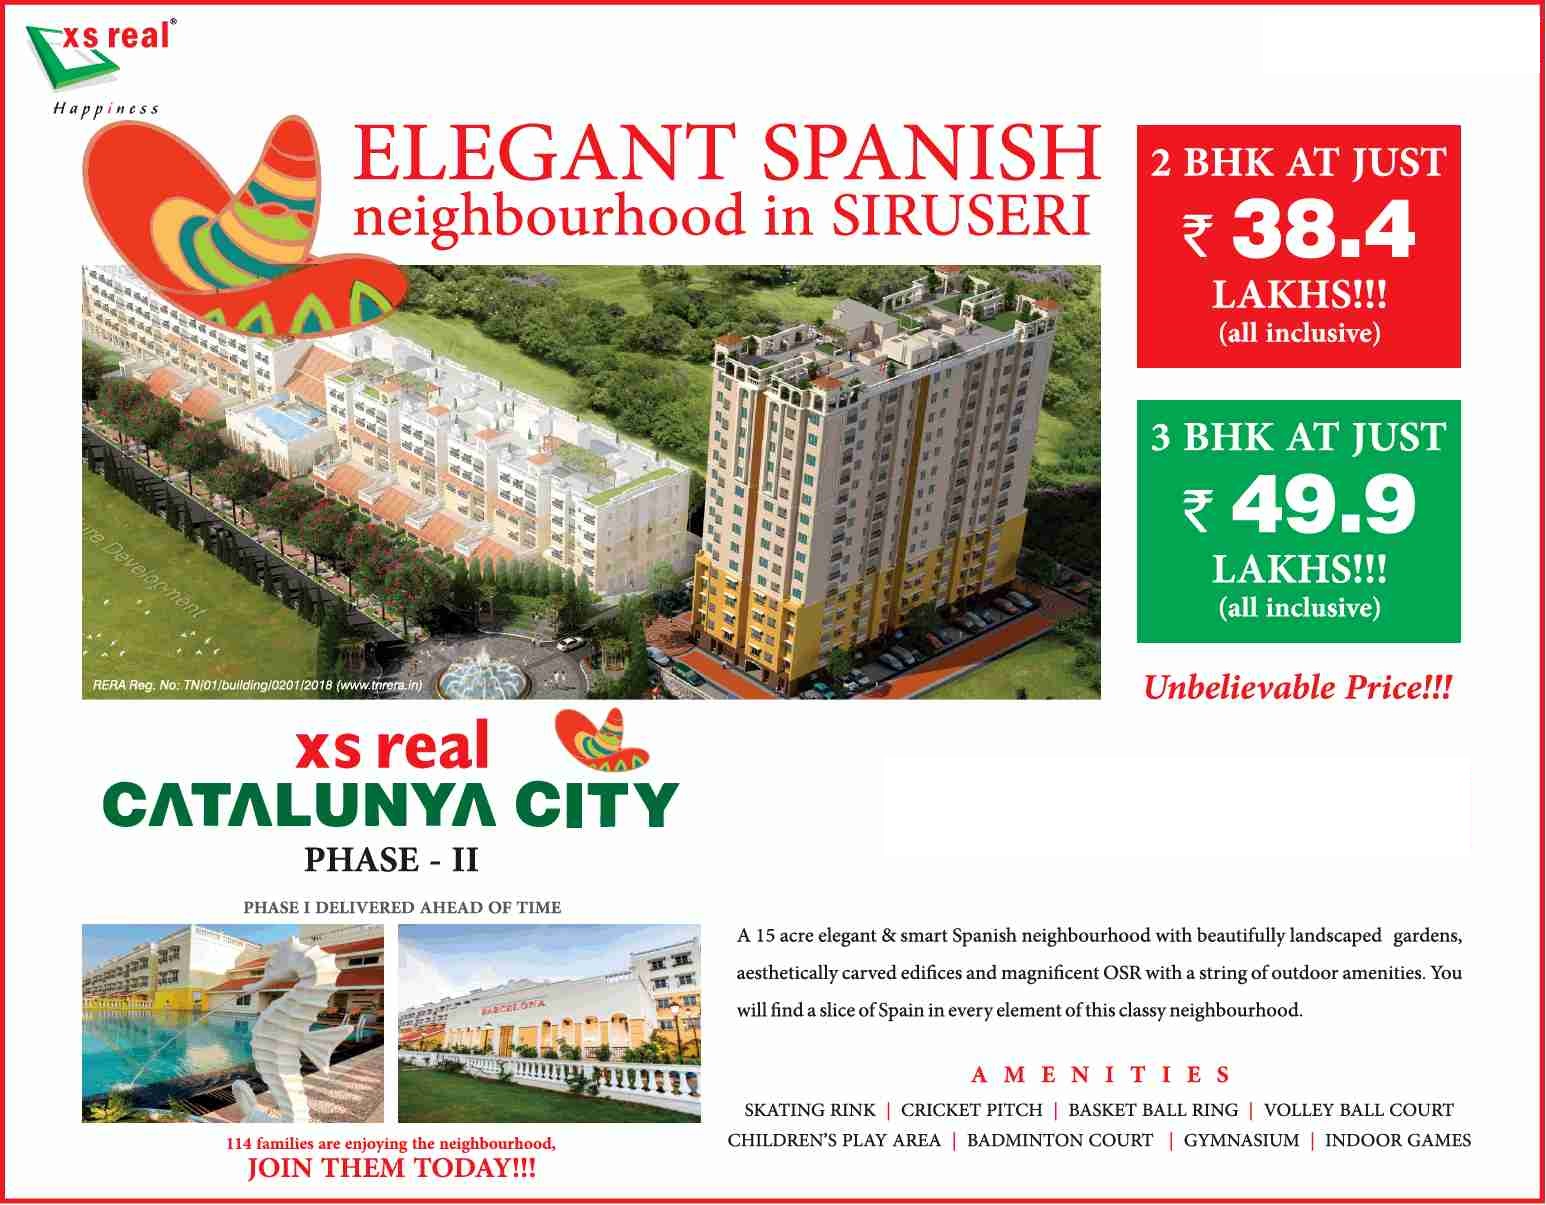 Reside in elegant spanish neighbourhood at XS Real Catalunya City in Siruseri, Chennai Update